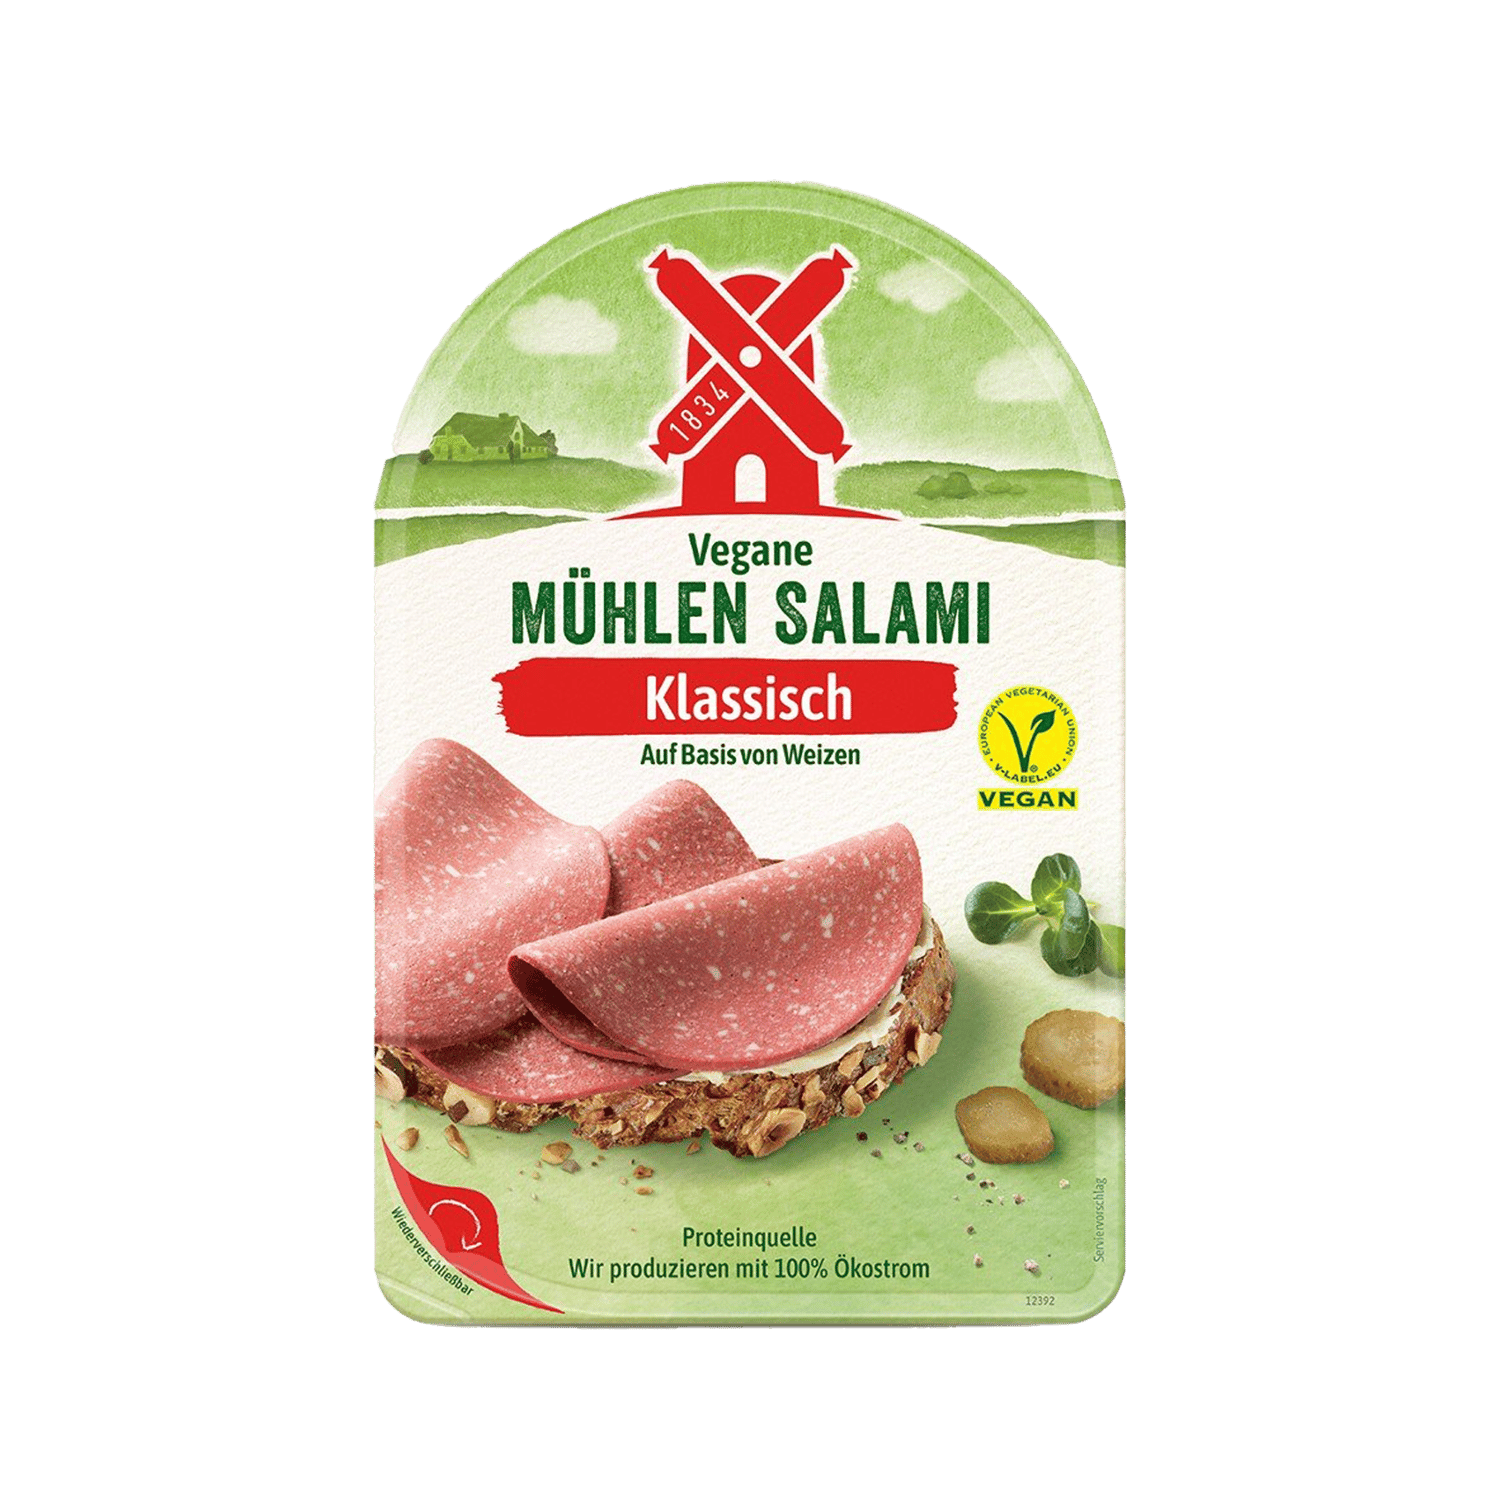 Vegane Mühlen Salami Klassisch, 80g